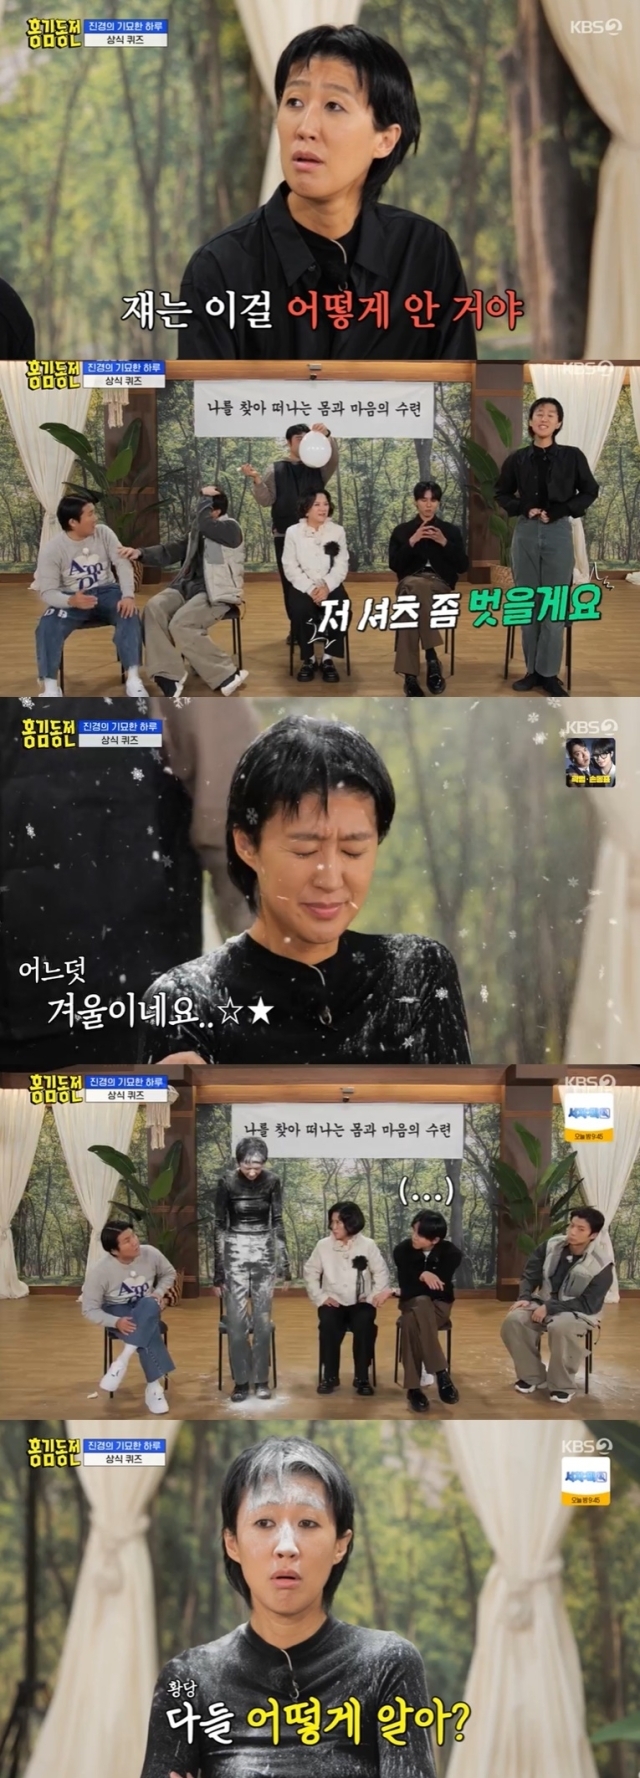 KBS 2TV '홍김동전' 방송 화면